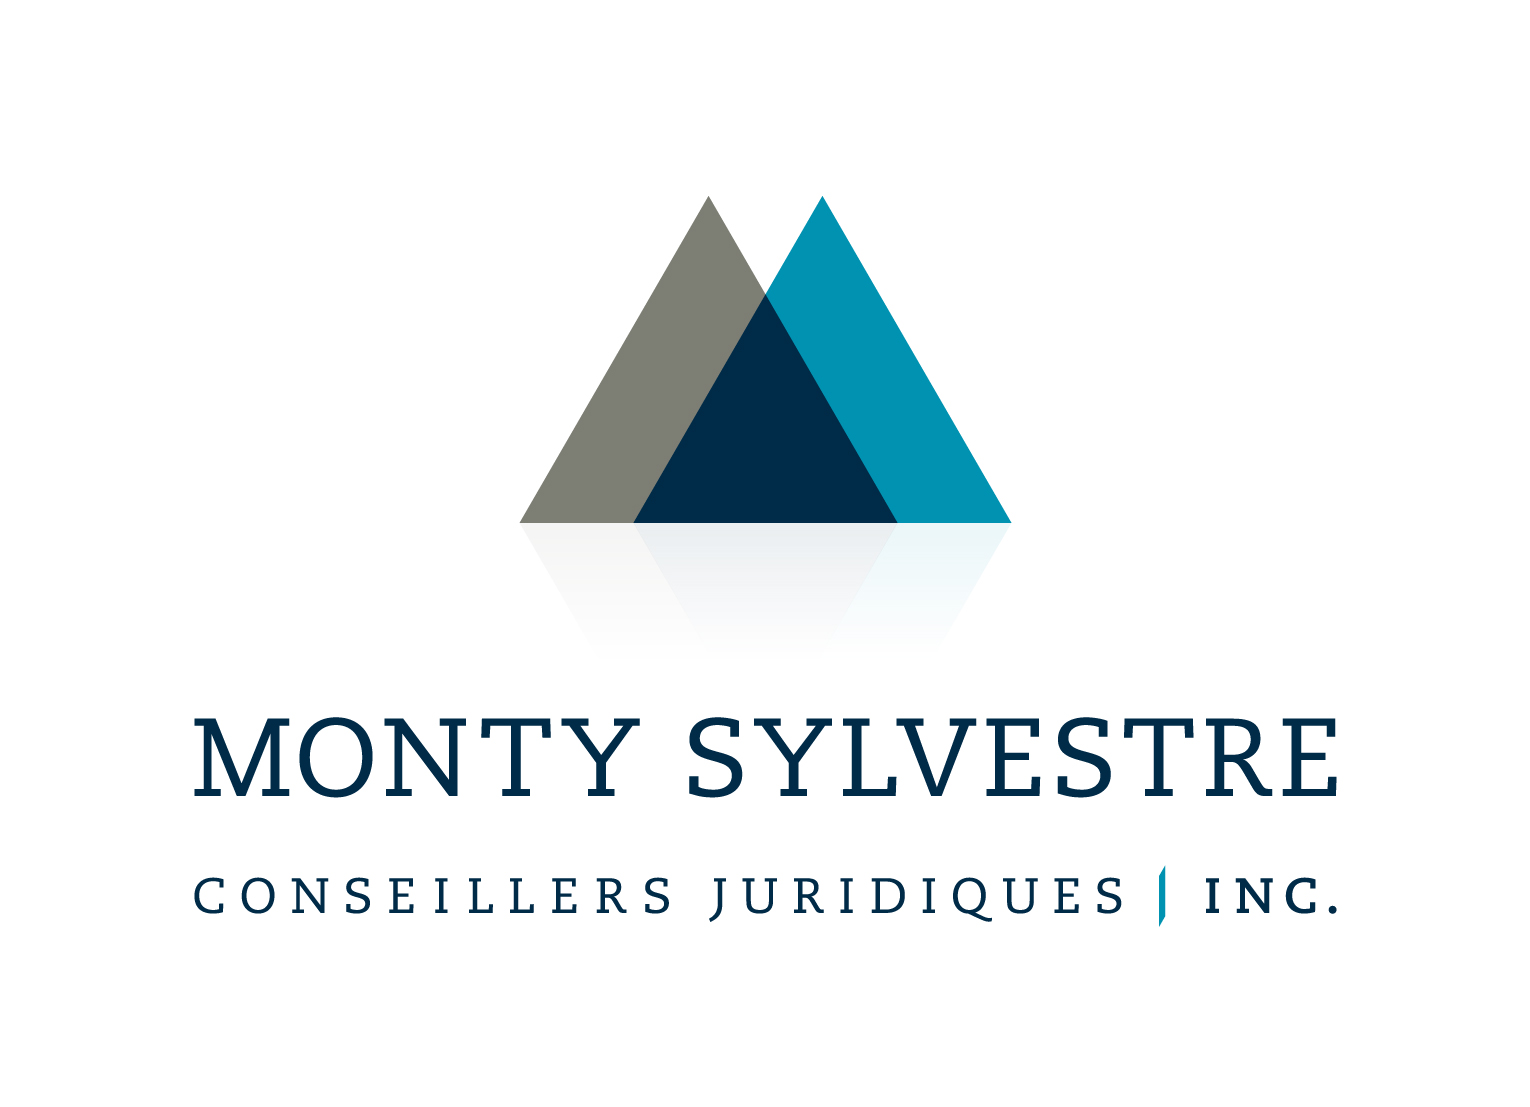 Monty Sylvestre, conseillers juridiques inc.